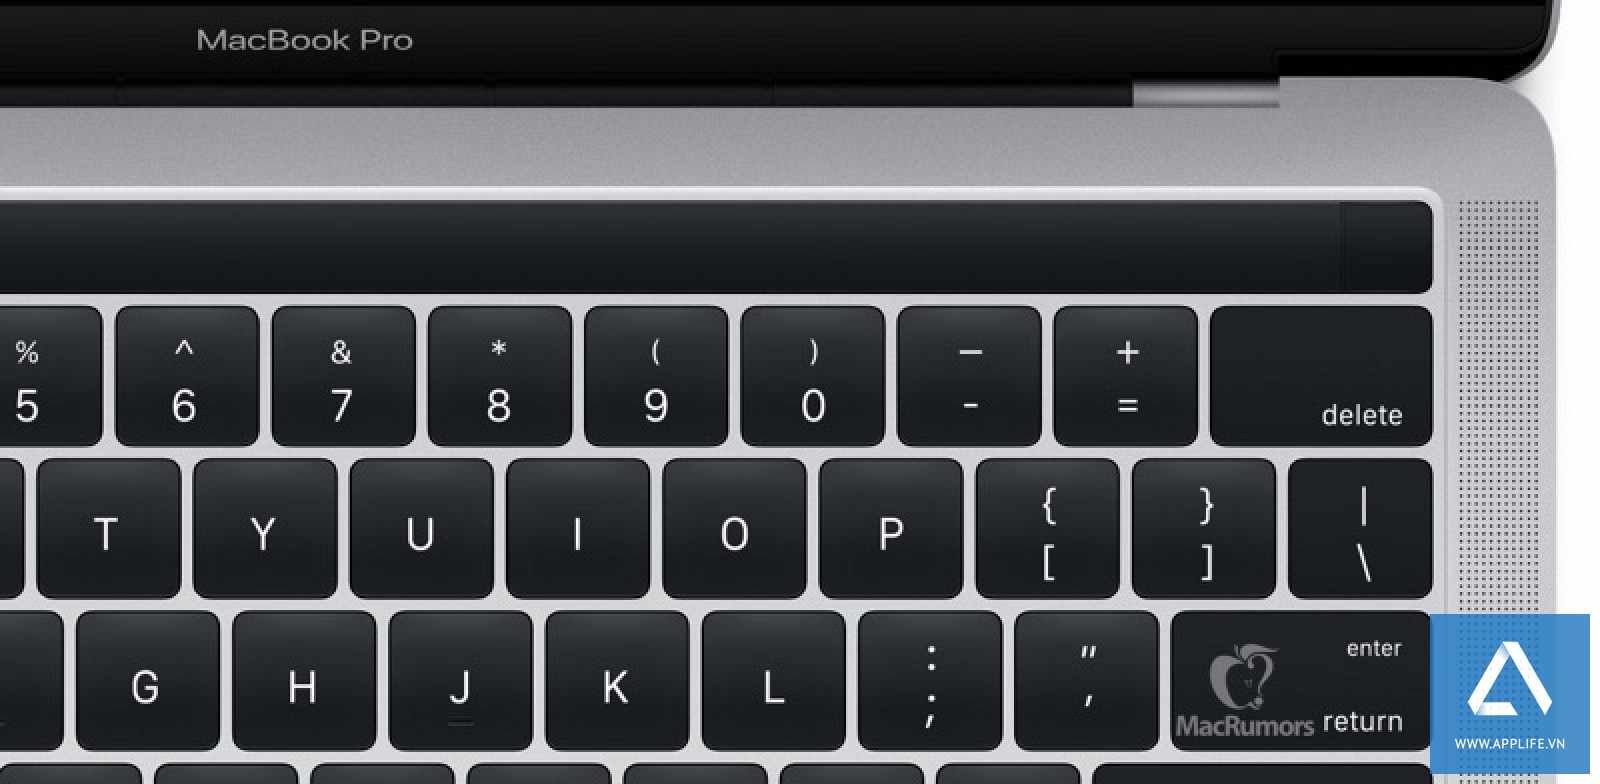 Thanh chức năng mới mà Apple sẽ gọi là Magic Toolbar